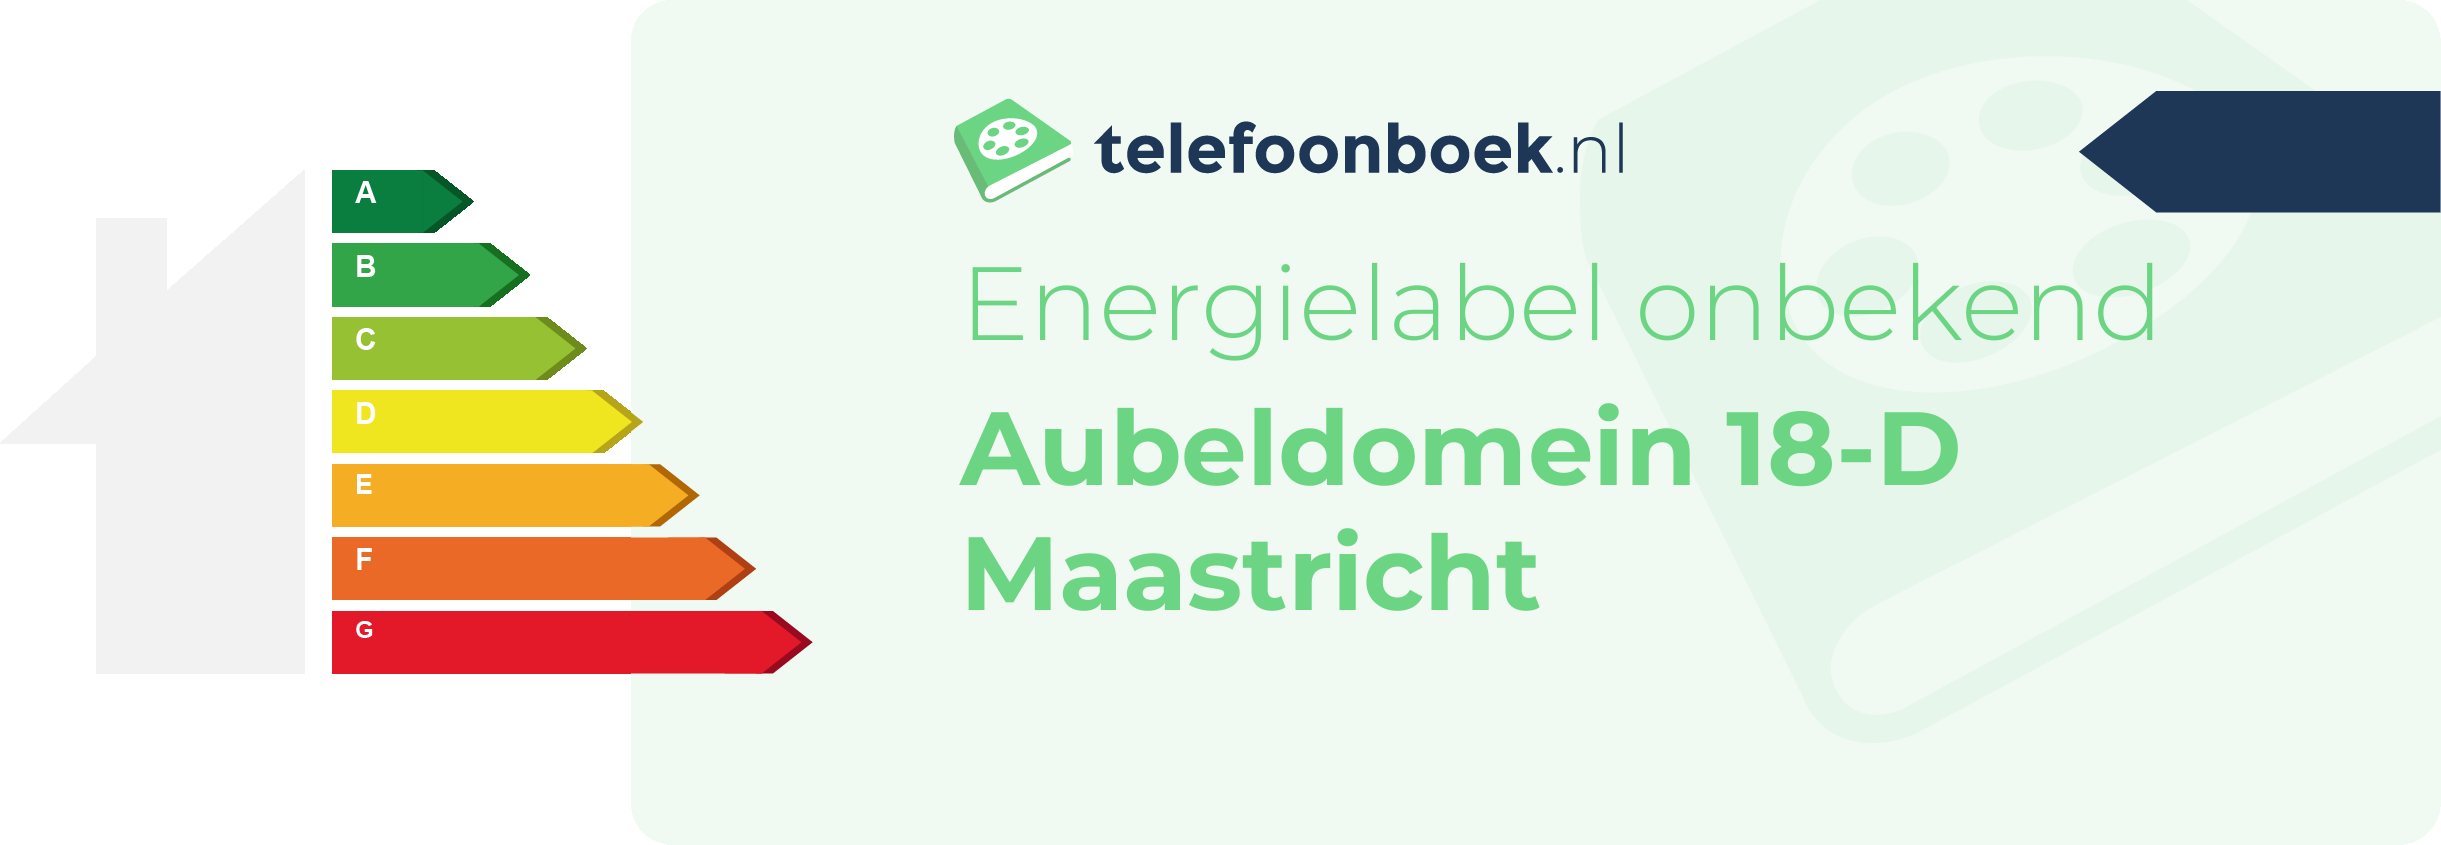 Energielabel Aubeldomein 18-D Maastricht